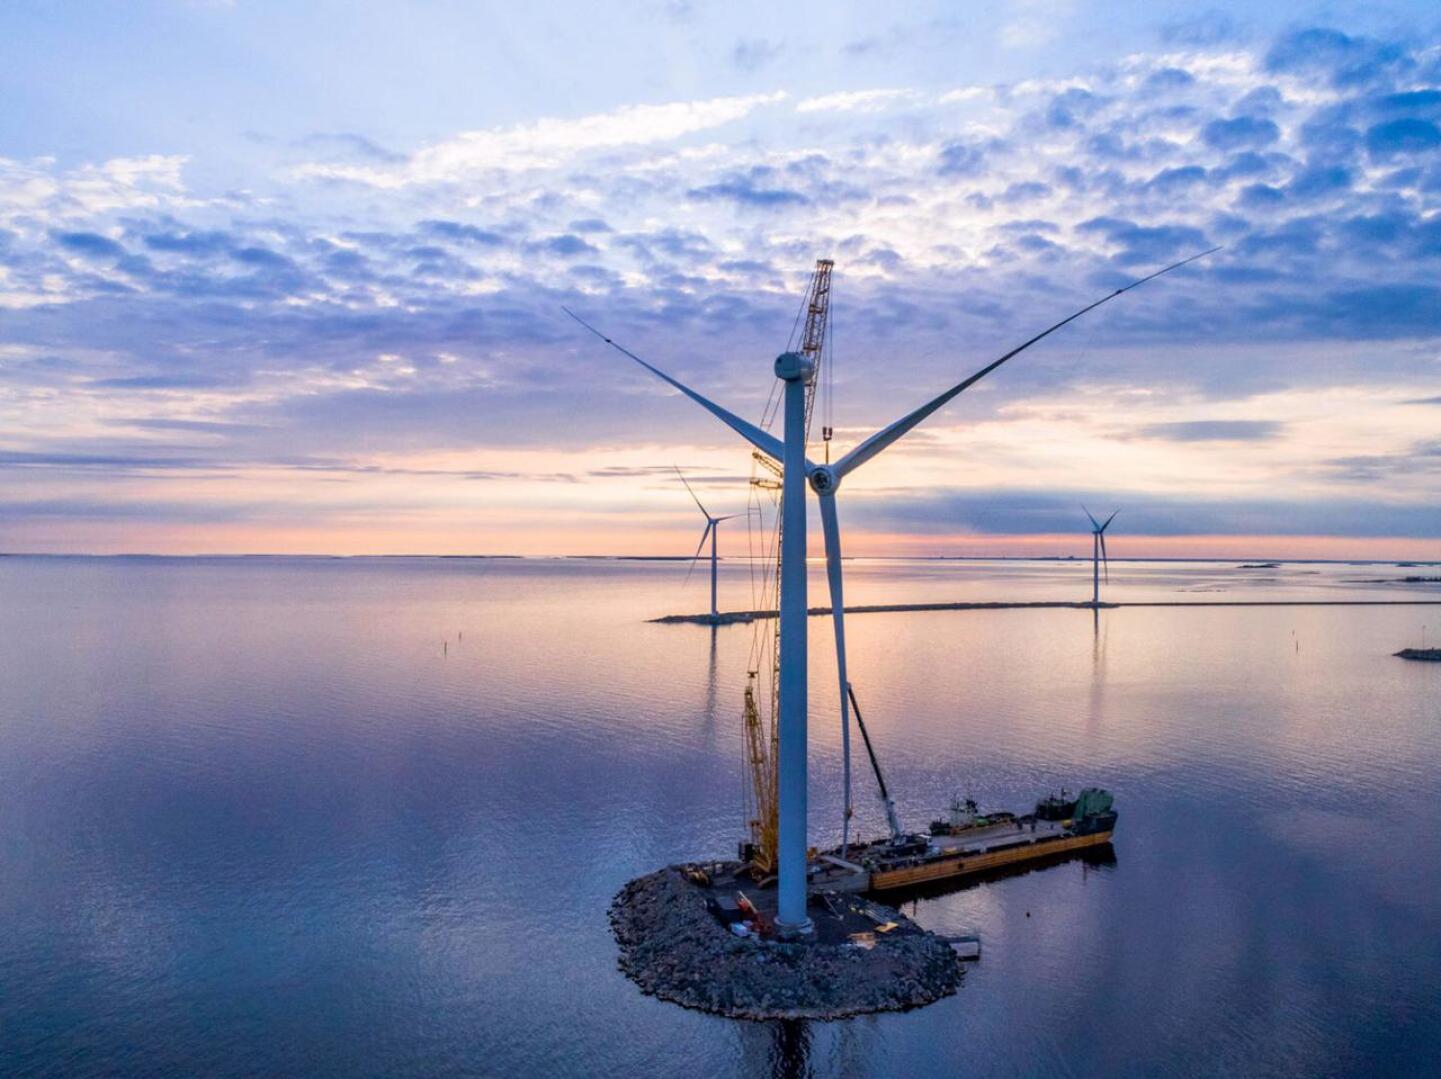 OX2:n Ajokseen rakentamat tuulivoimalat ovat puoliksi merellisessä ympäristössä. Pietarsaaren ja Hailuodon edustoille suunniteltujen voimaloiden kokoluokka on aivan toinen.